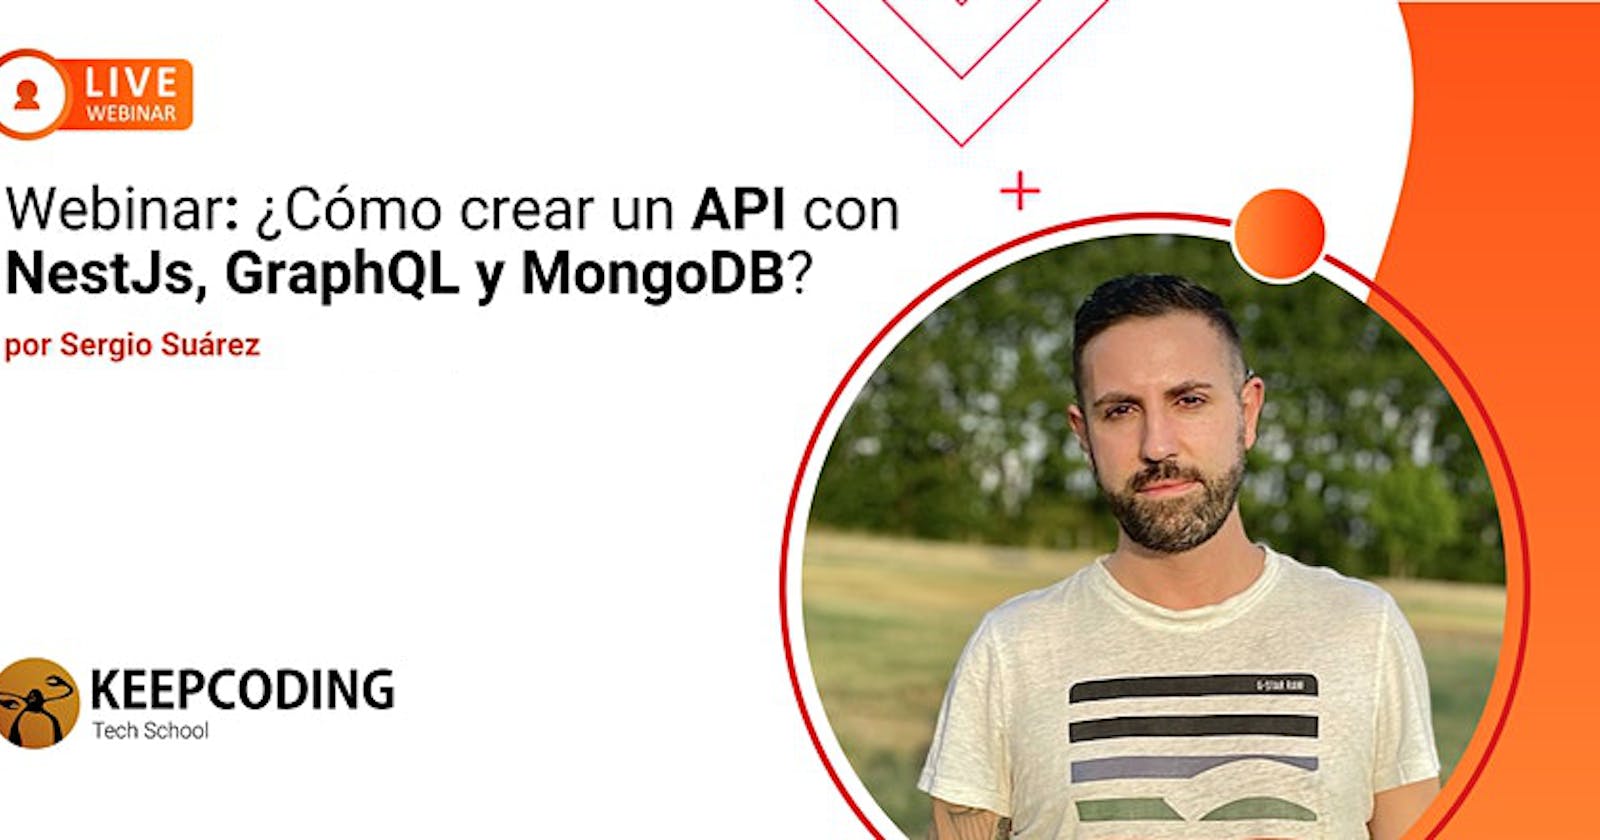 Webinar: ¿Cómo crear un API con NestJs, GraphQL y MongoDB?